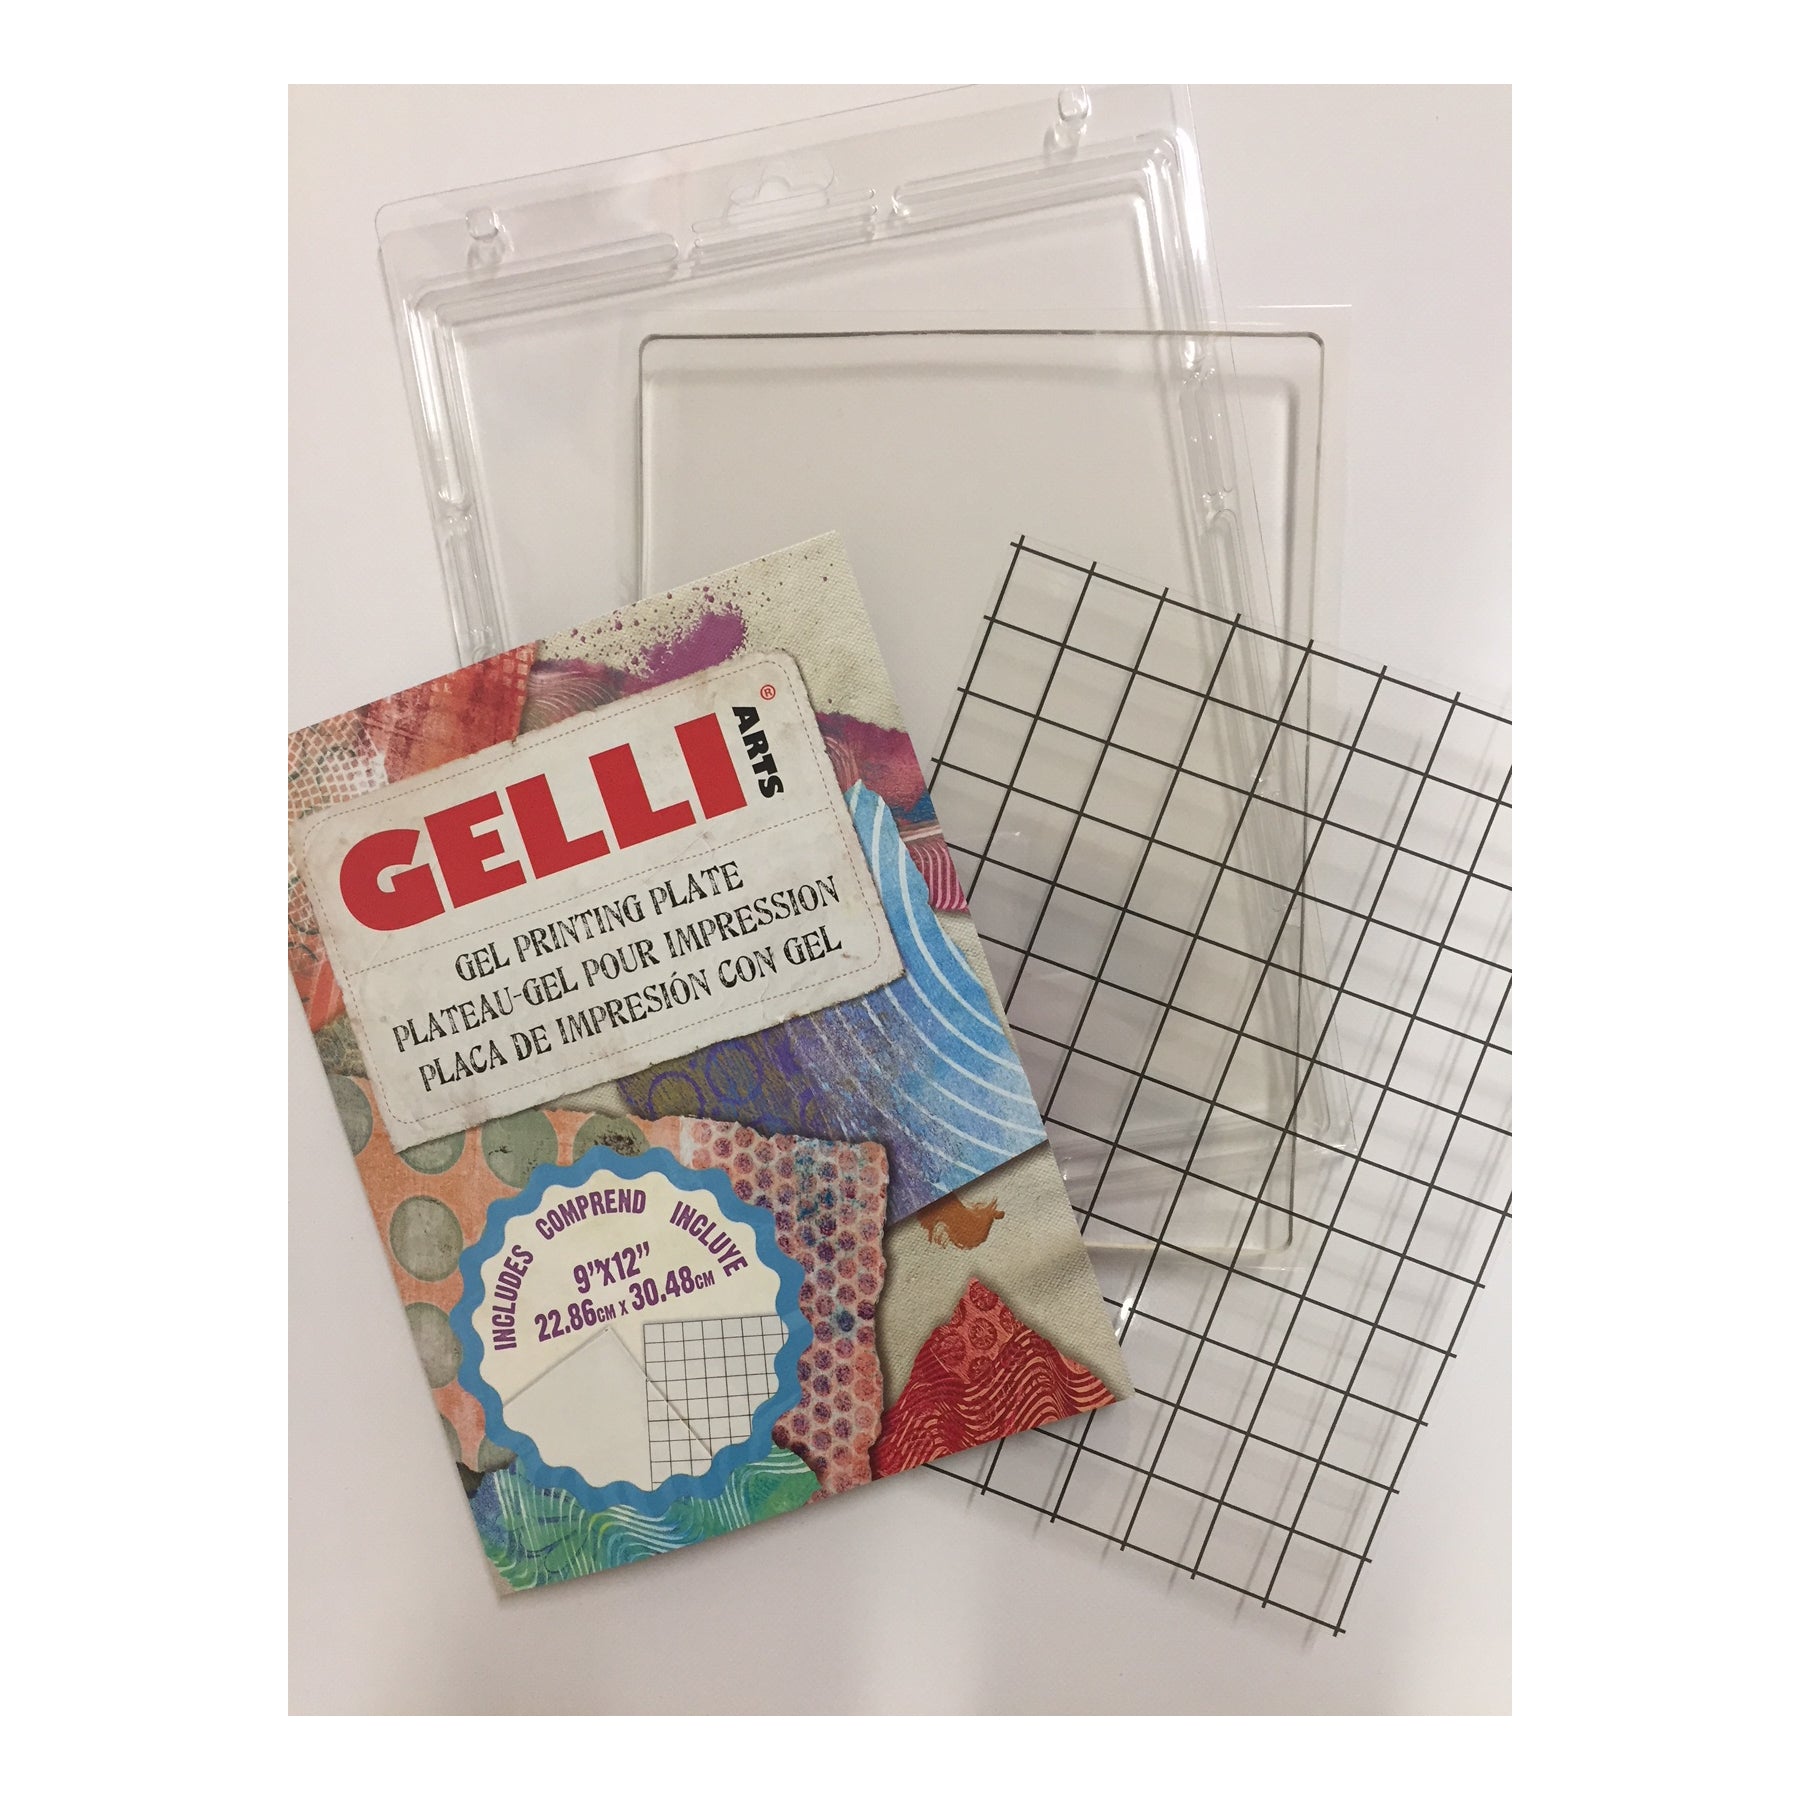 Gelli Arts Gel Printing Plate - 6 X 6 Gel Plate, Reusable Gel Printing  Plate, Printmaking Gelli Plate for Art, Clear Gel Monoprinting Plate, Gel